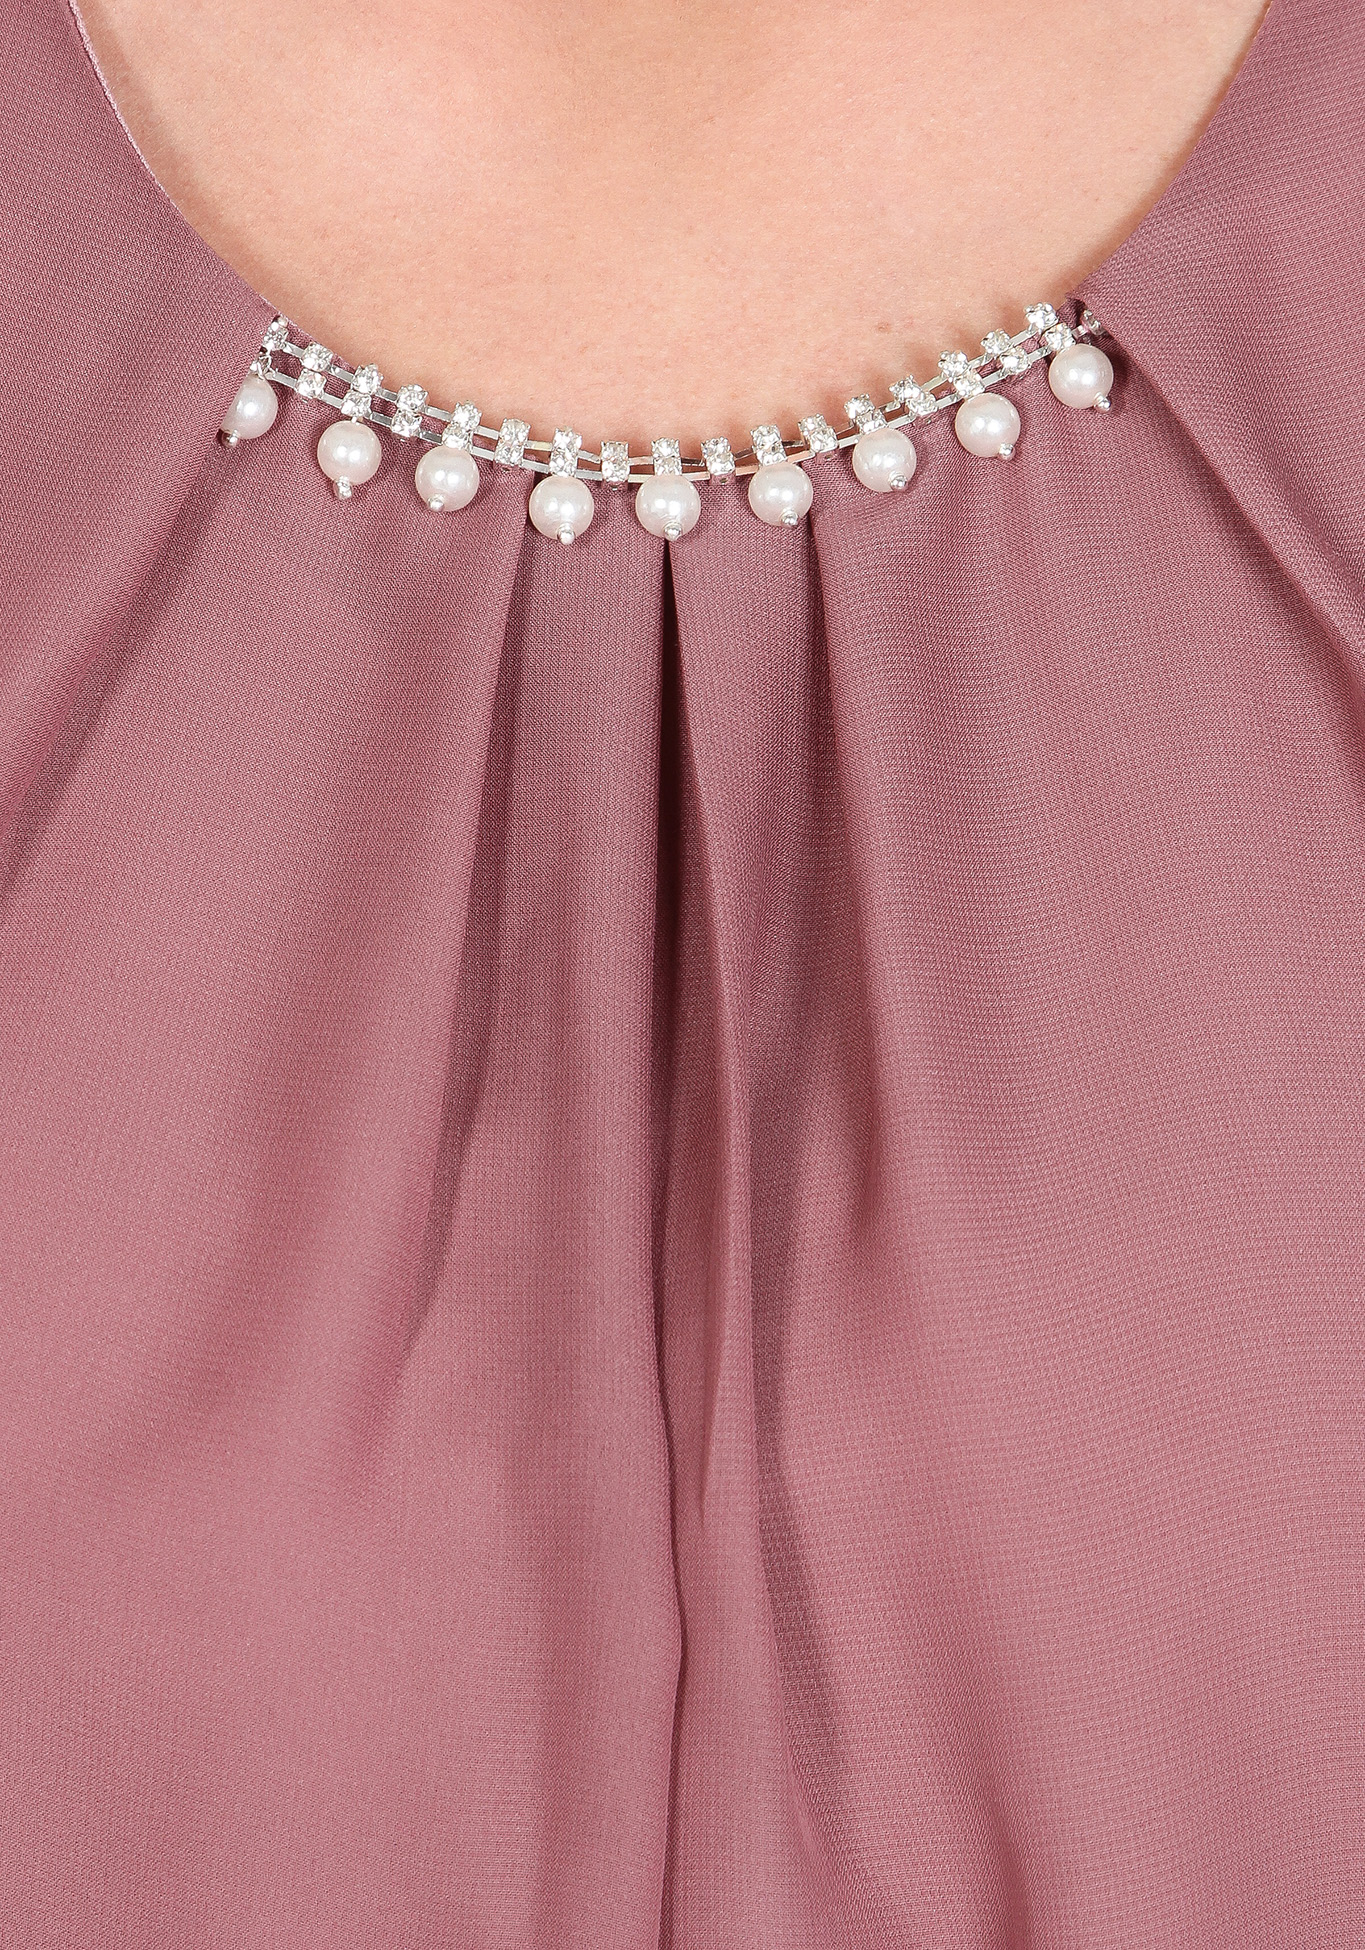 Блуза «Романтичный образ» Zanzara, размер 50, цвет пудровый - фото 3